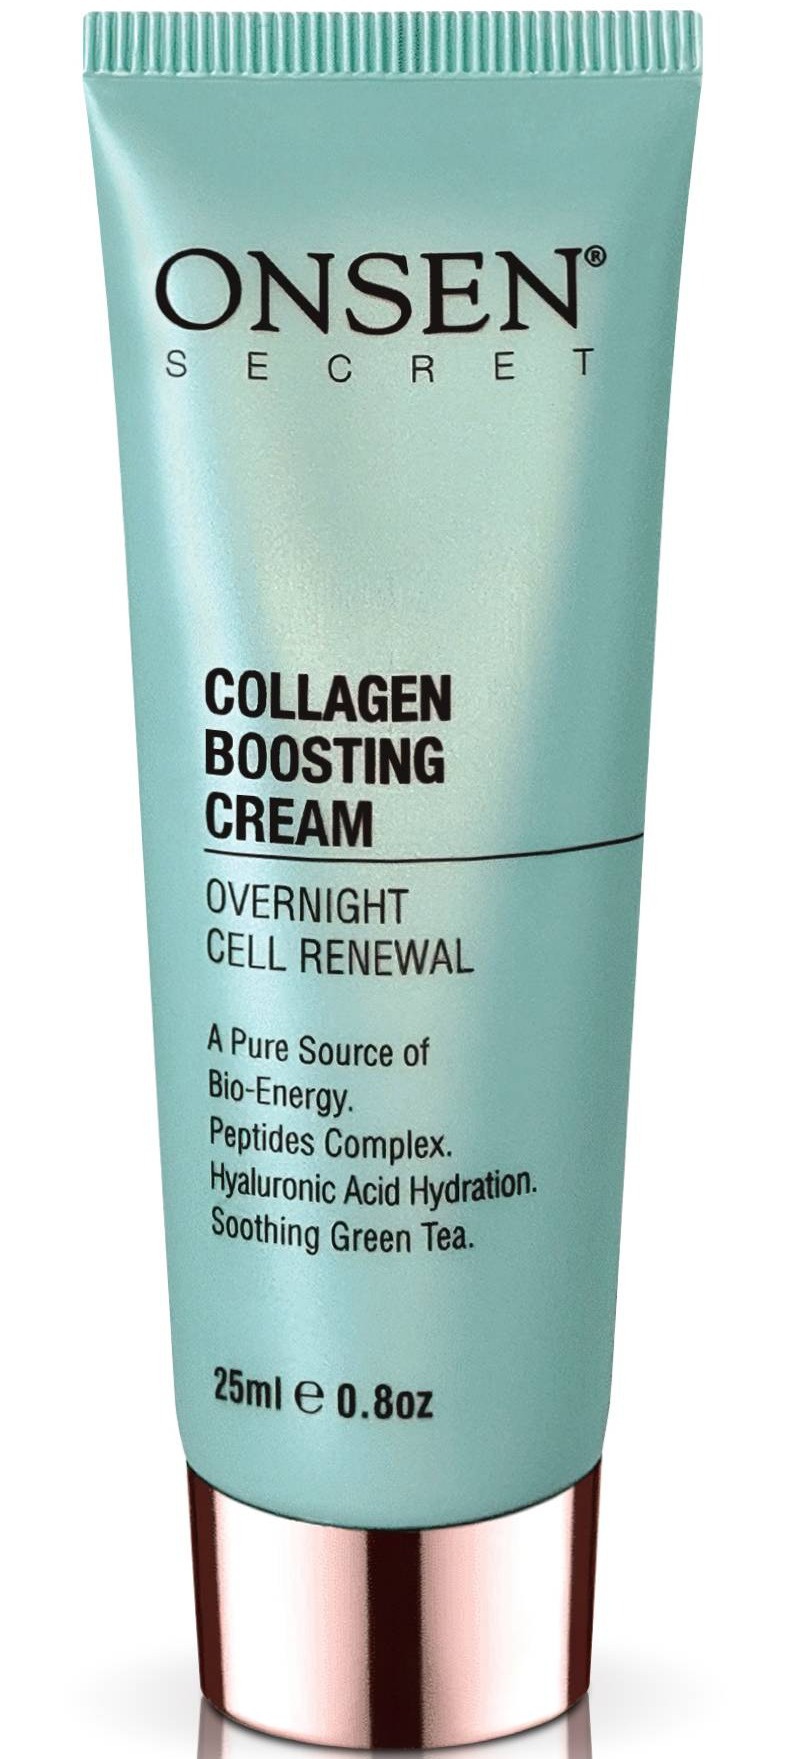 Onsen Secret Collagen Boosting Cream